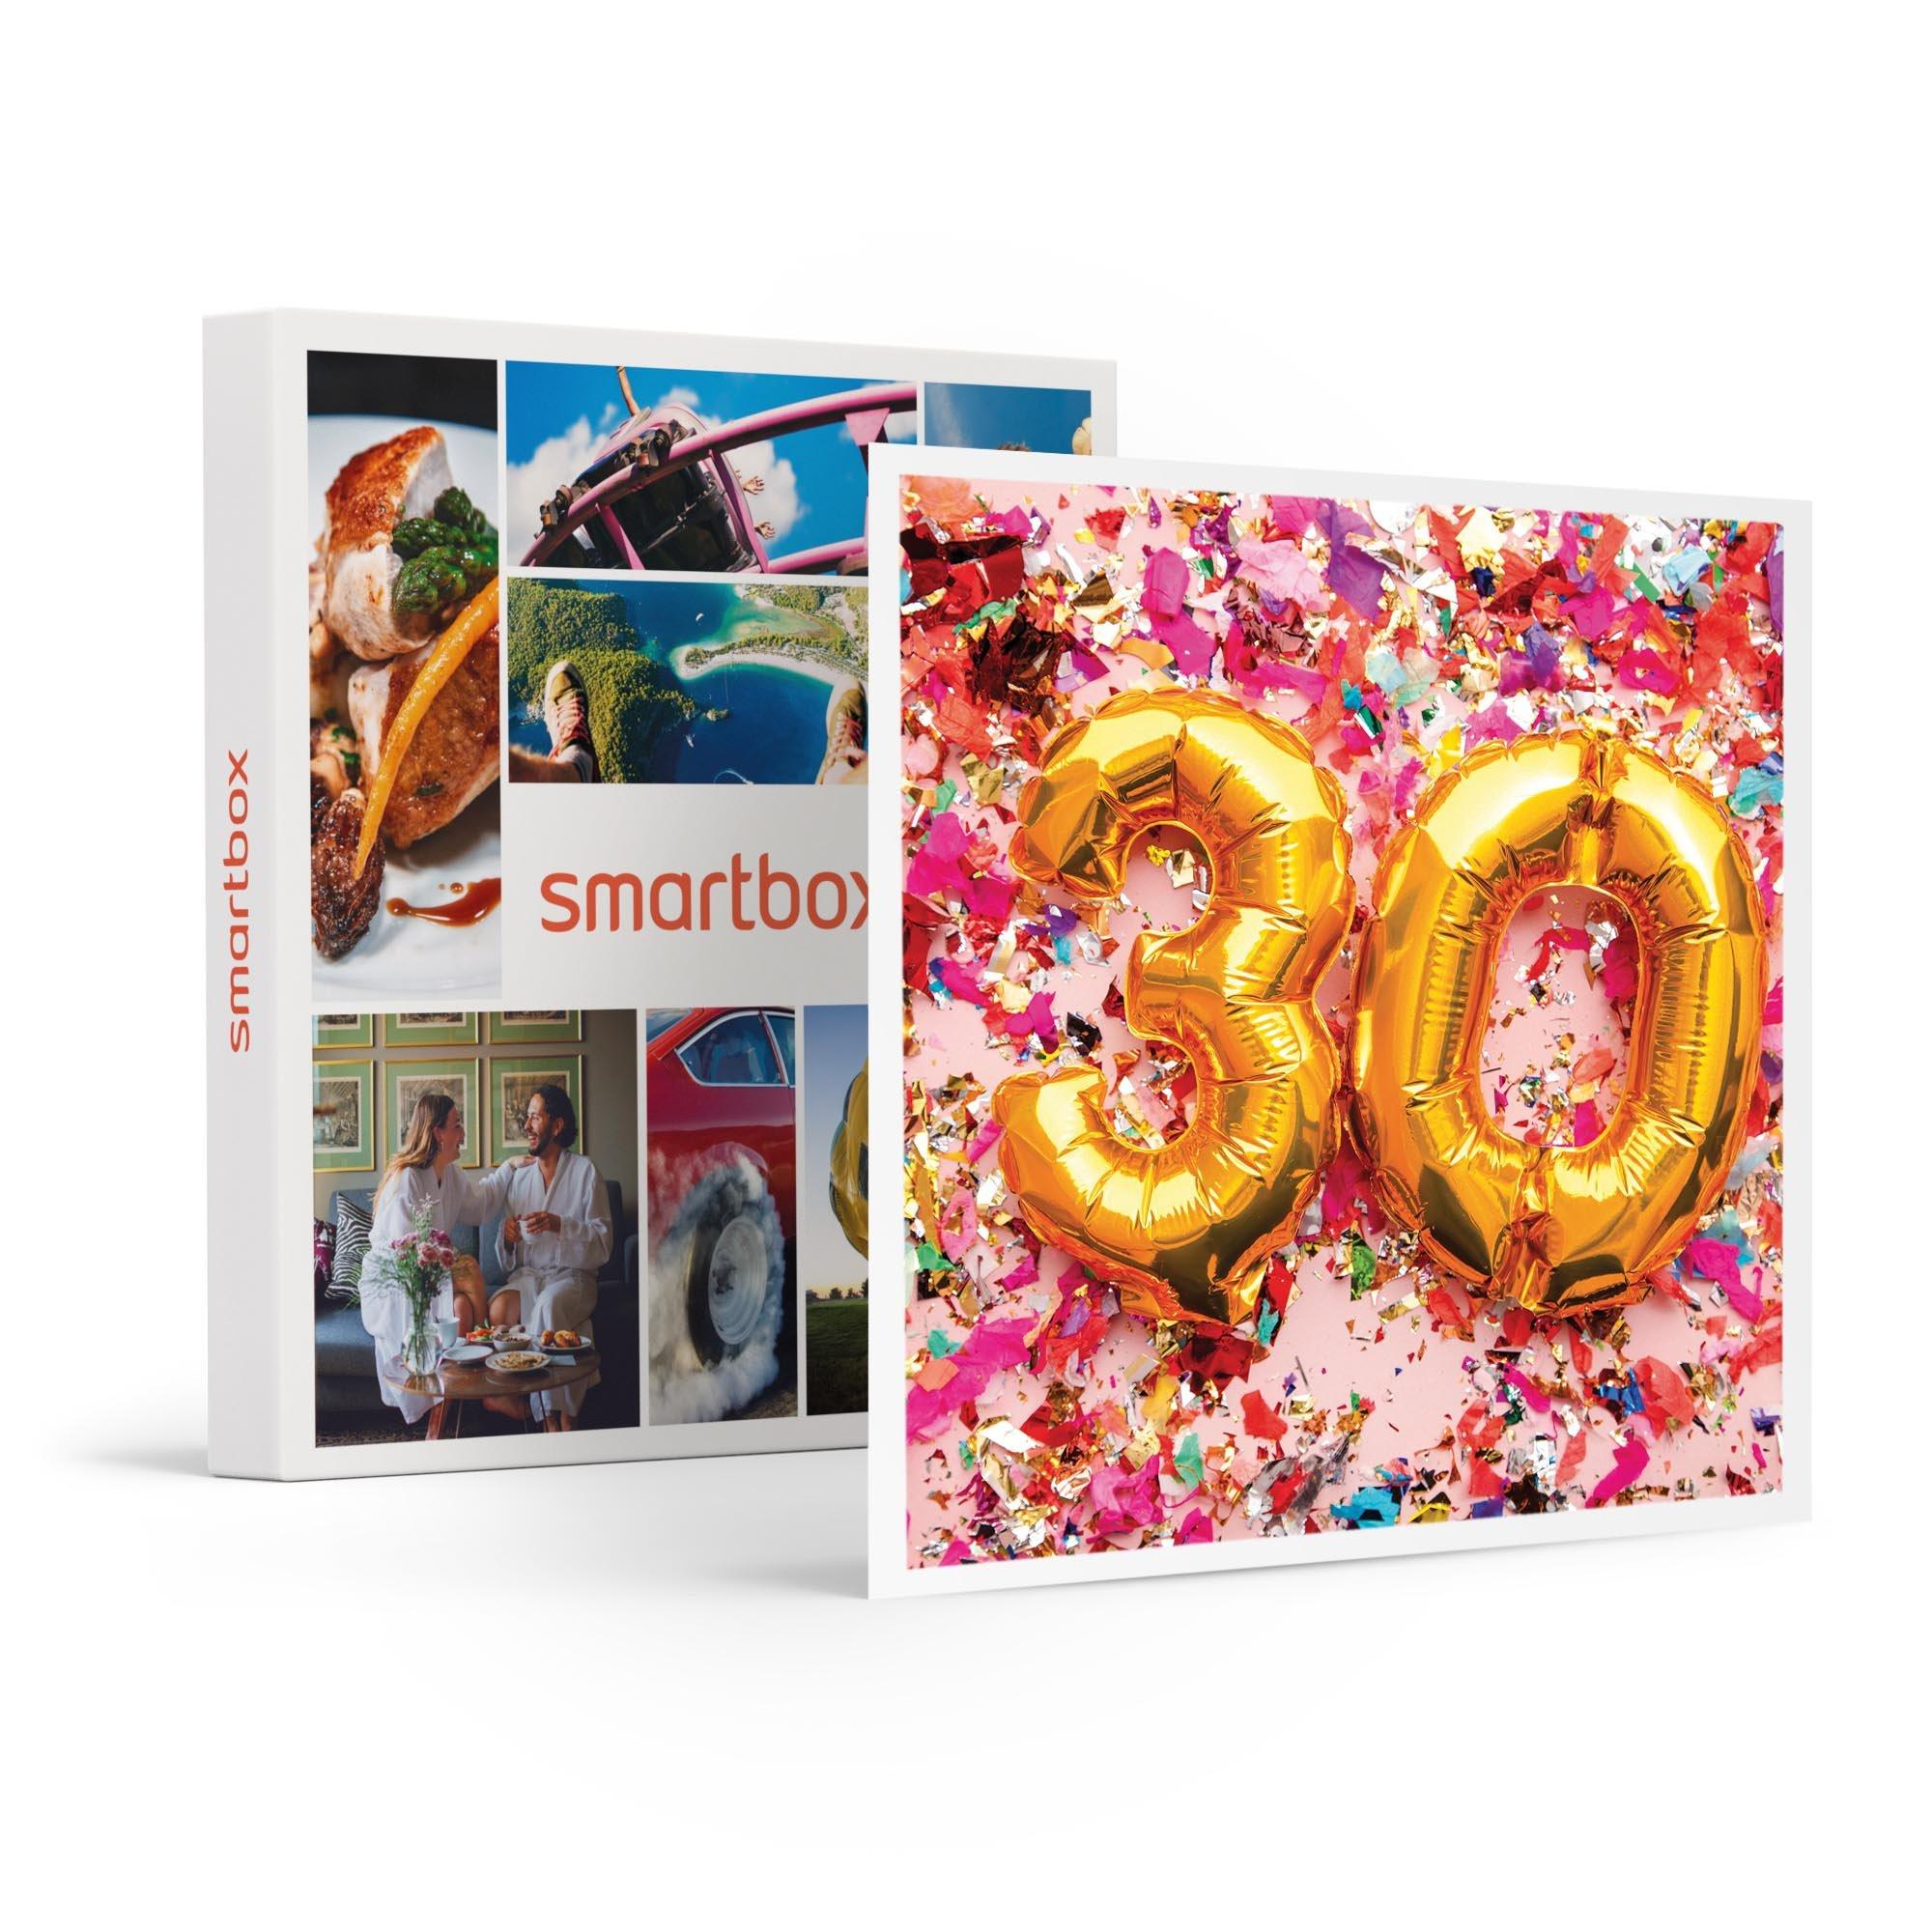 Smartbox  Un compleanno speciale, 30 anni! Soggiorni in Europa, cene gourmet o avventure per 2 - Cofanetto regalo 